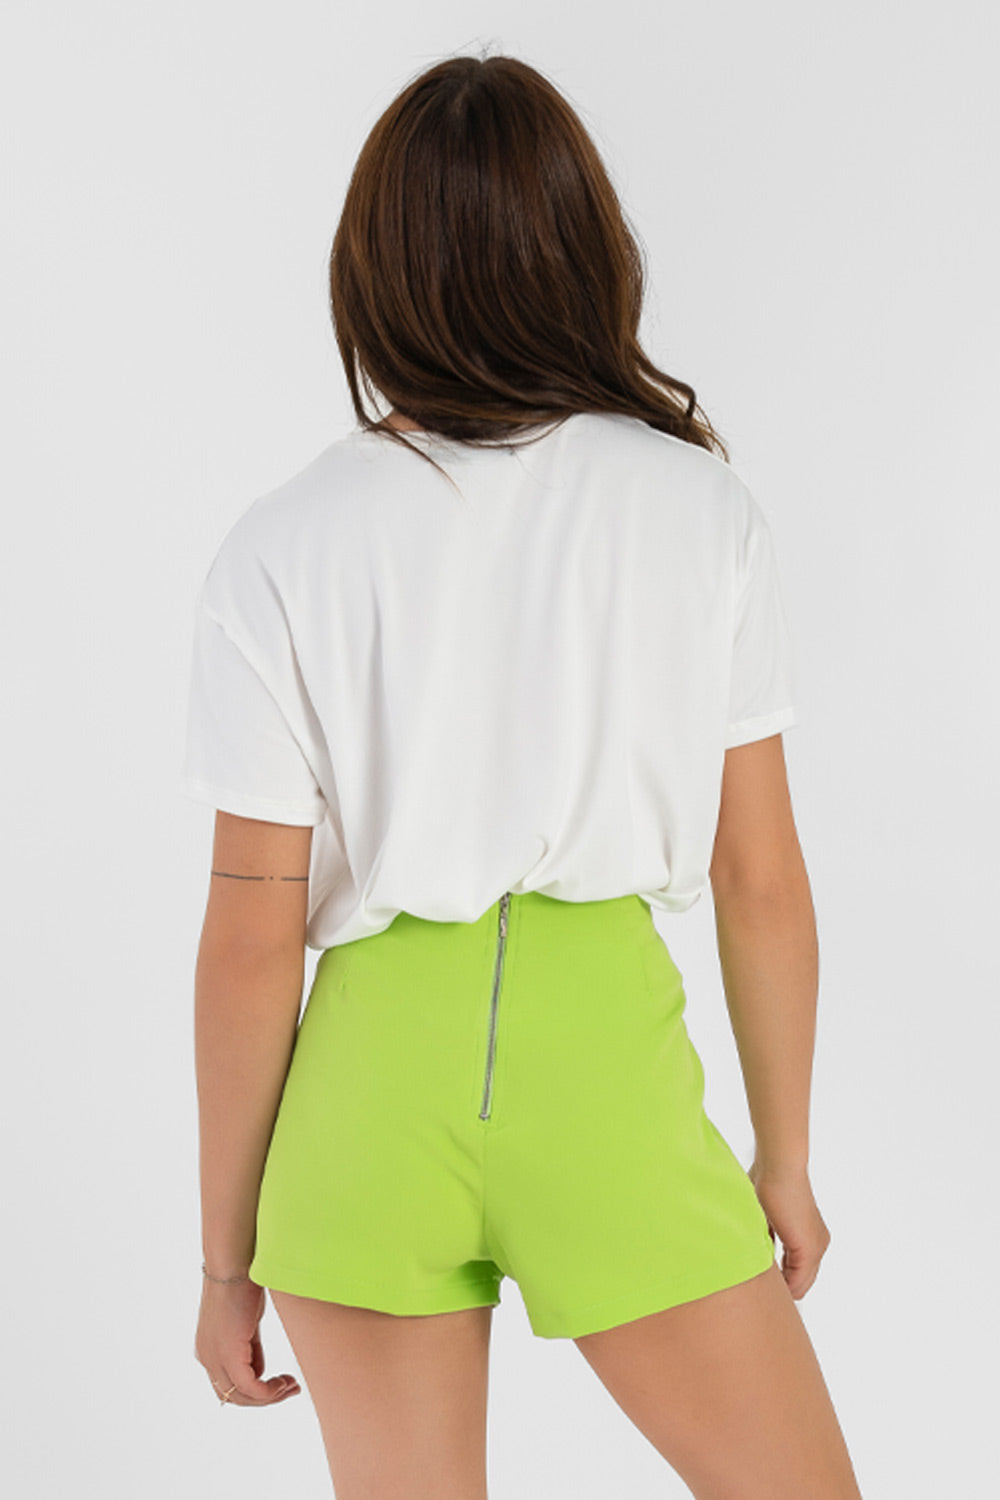 Falda short de fit ajustado, cintura alta, cruce frontal con bajo diagonal y cierre posterior con cremallera visible en contraste.